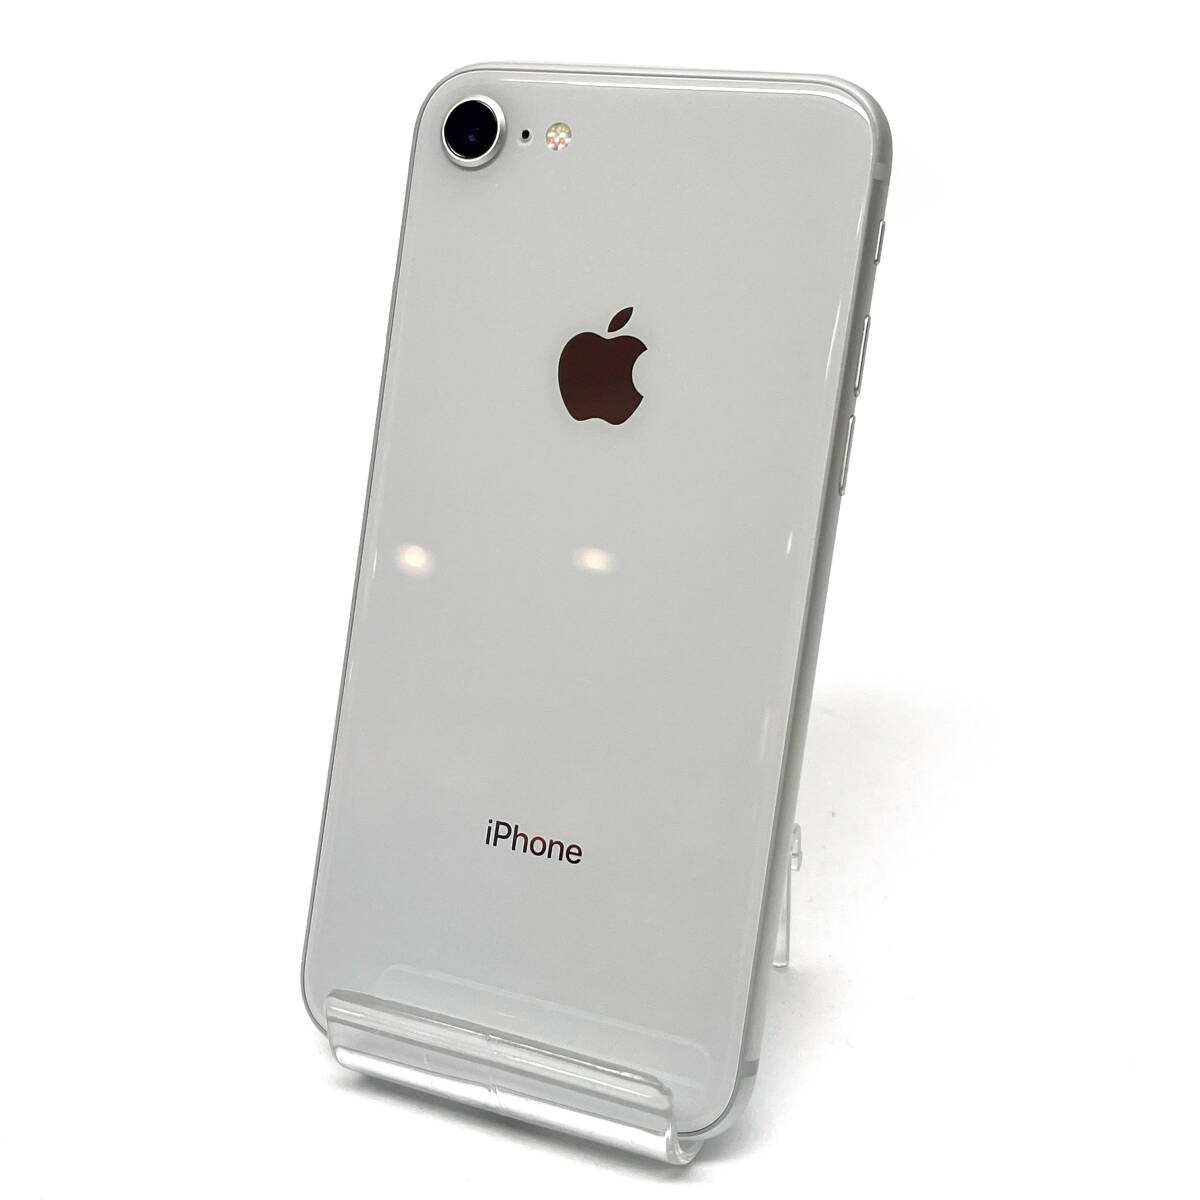 tu111 Apple iPhone8 64GB MQ792J/A   серебристый   батарея  ... большое содержимое  ：78％  использование   предел 0 SIM рок  нет  ※ подержанный товар / трудности  есть / батарея   ухудшение [качества]  